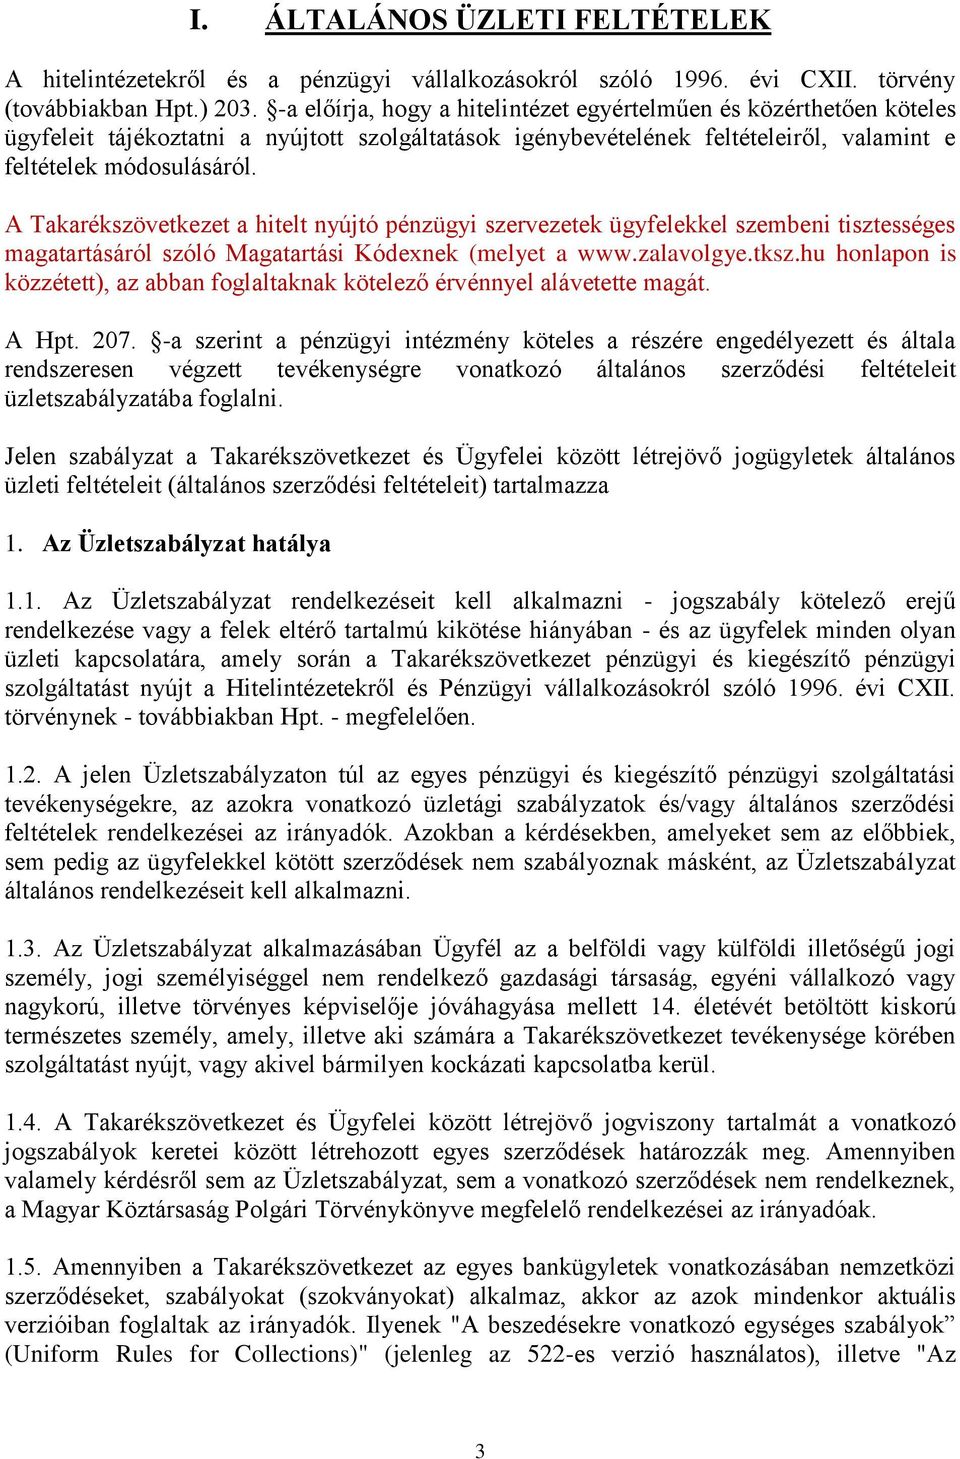 A Takarékszövetkezet a hitelt nyújtó pénzügyi szervezetek ügyfelekkel szembeni tisztességes magatartásáról szóló Magatartási Kódexnek (melyet a www.zalavolgye.tksz.